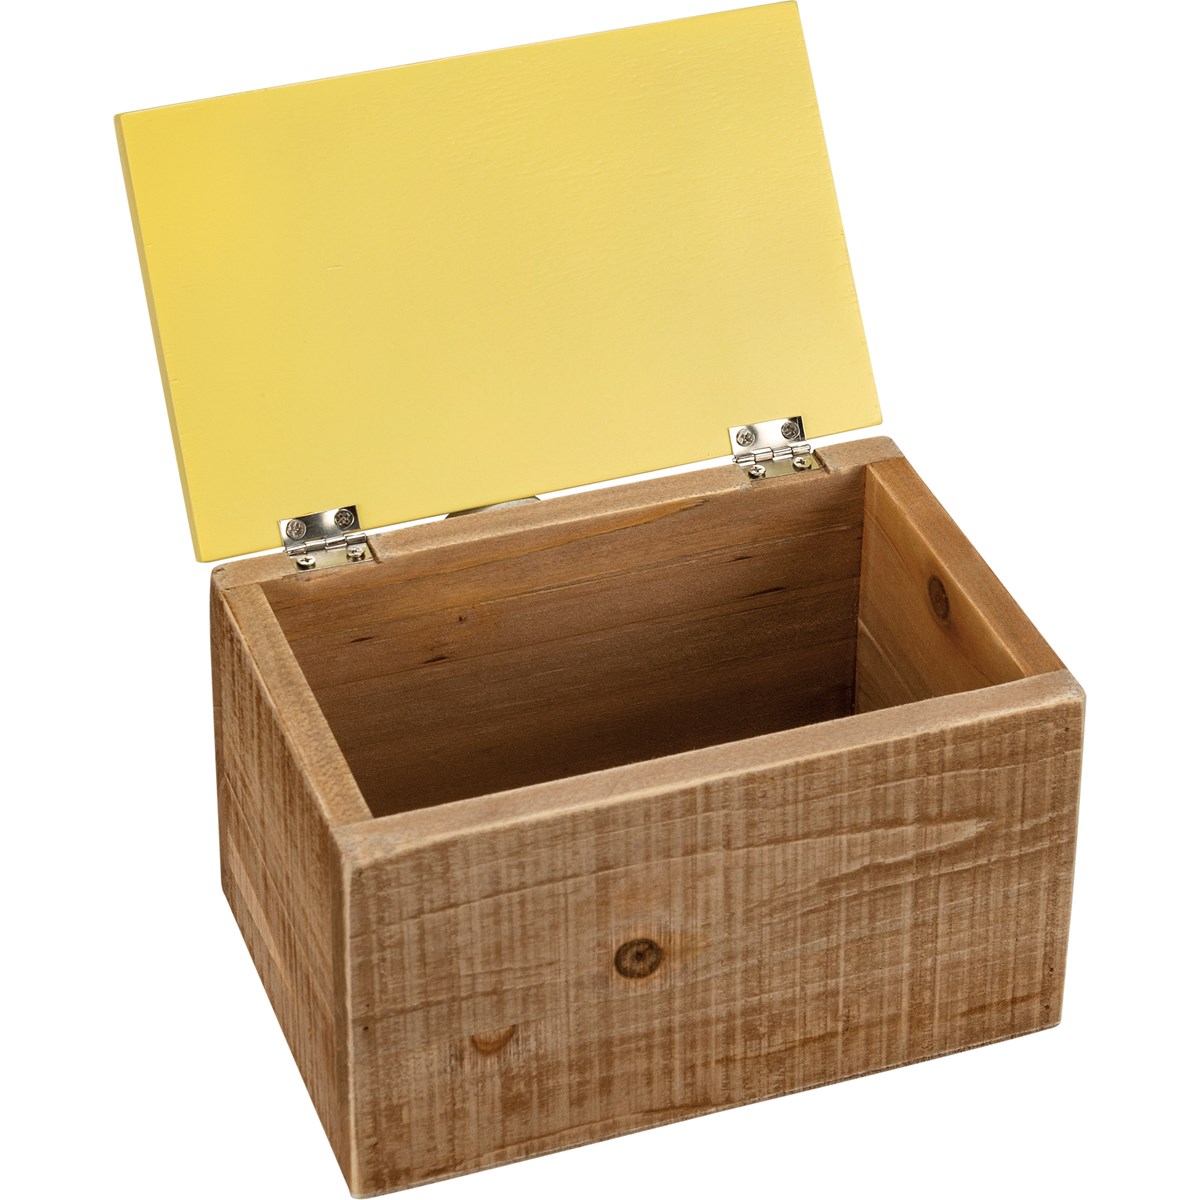 Lemons Hinged Box - Wood, Paper, Metal